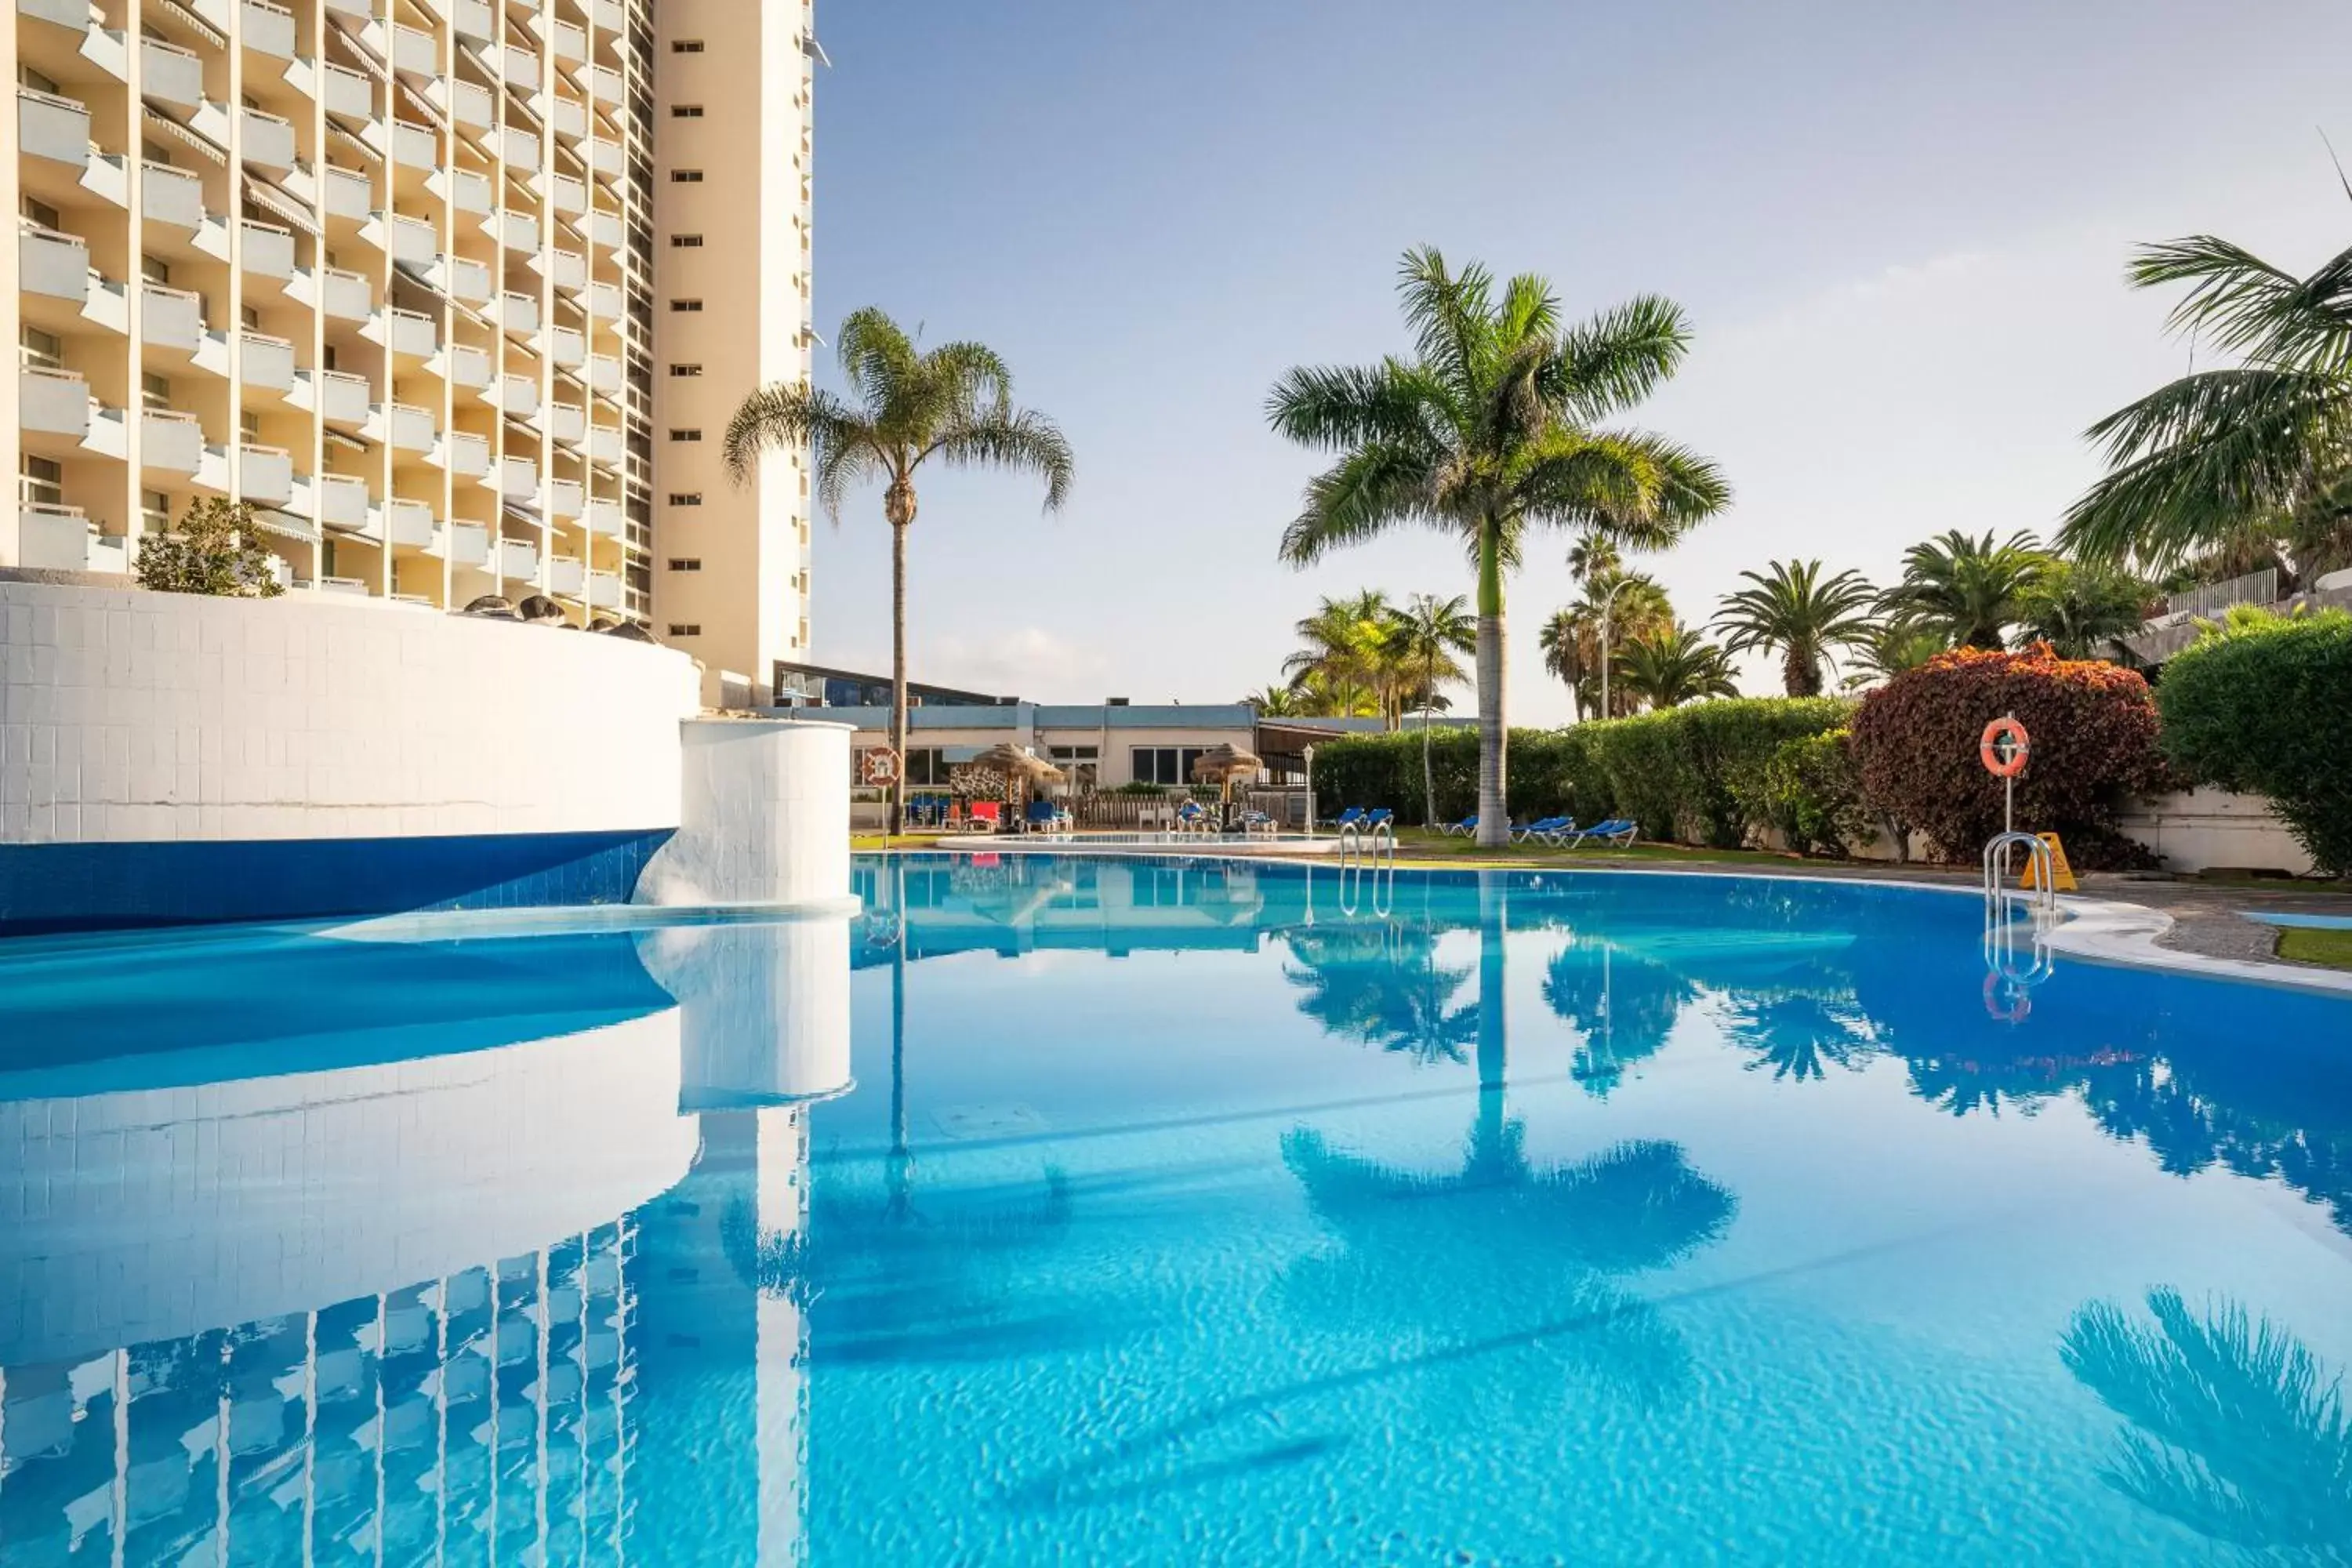 Pool view, Swimming Pool in Precise Resort Tenerife